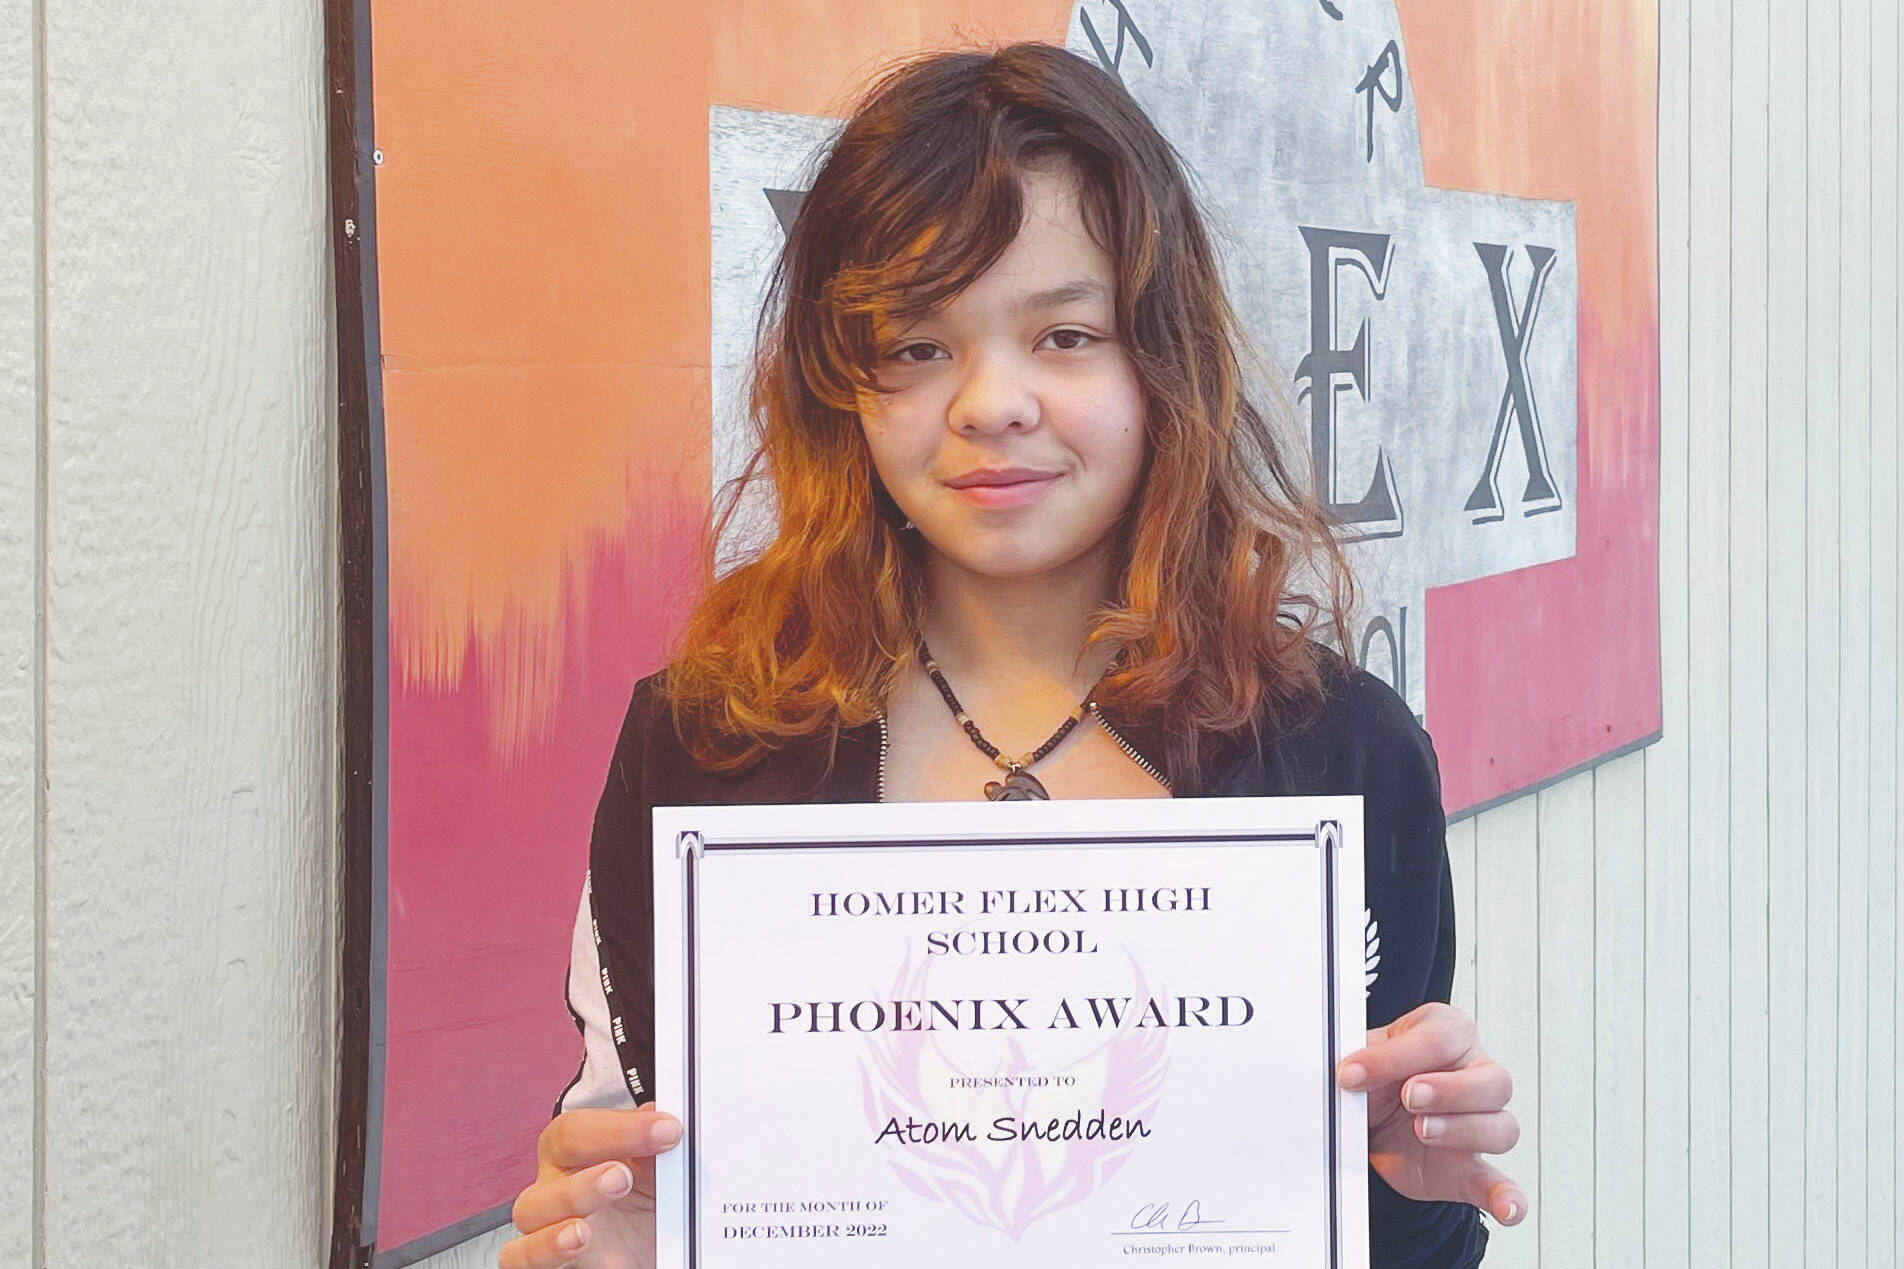 Photo by Beth Schneider
Atom Snedden, Homer Flex School Phoenix Award recipient.